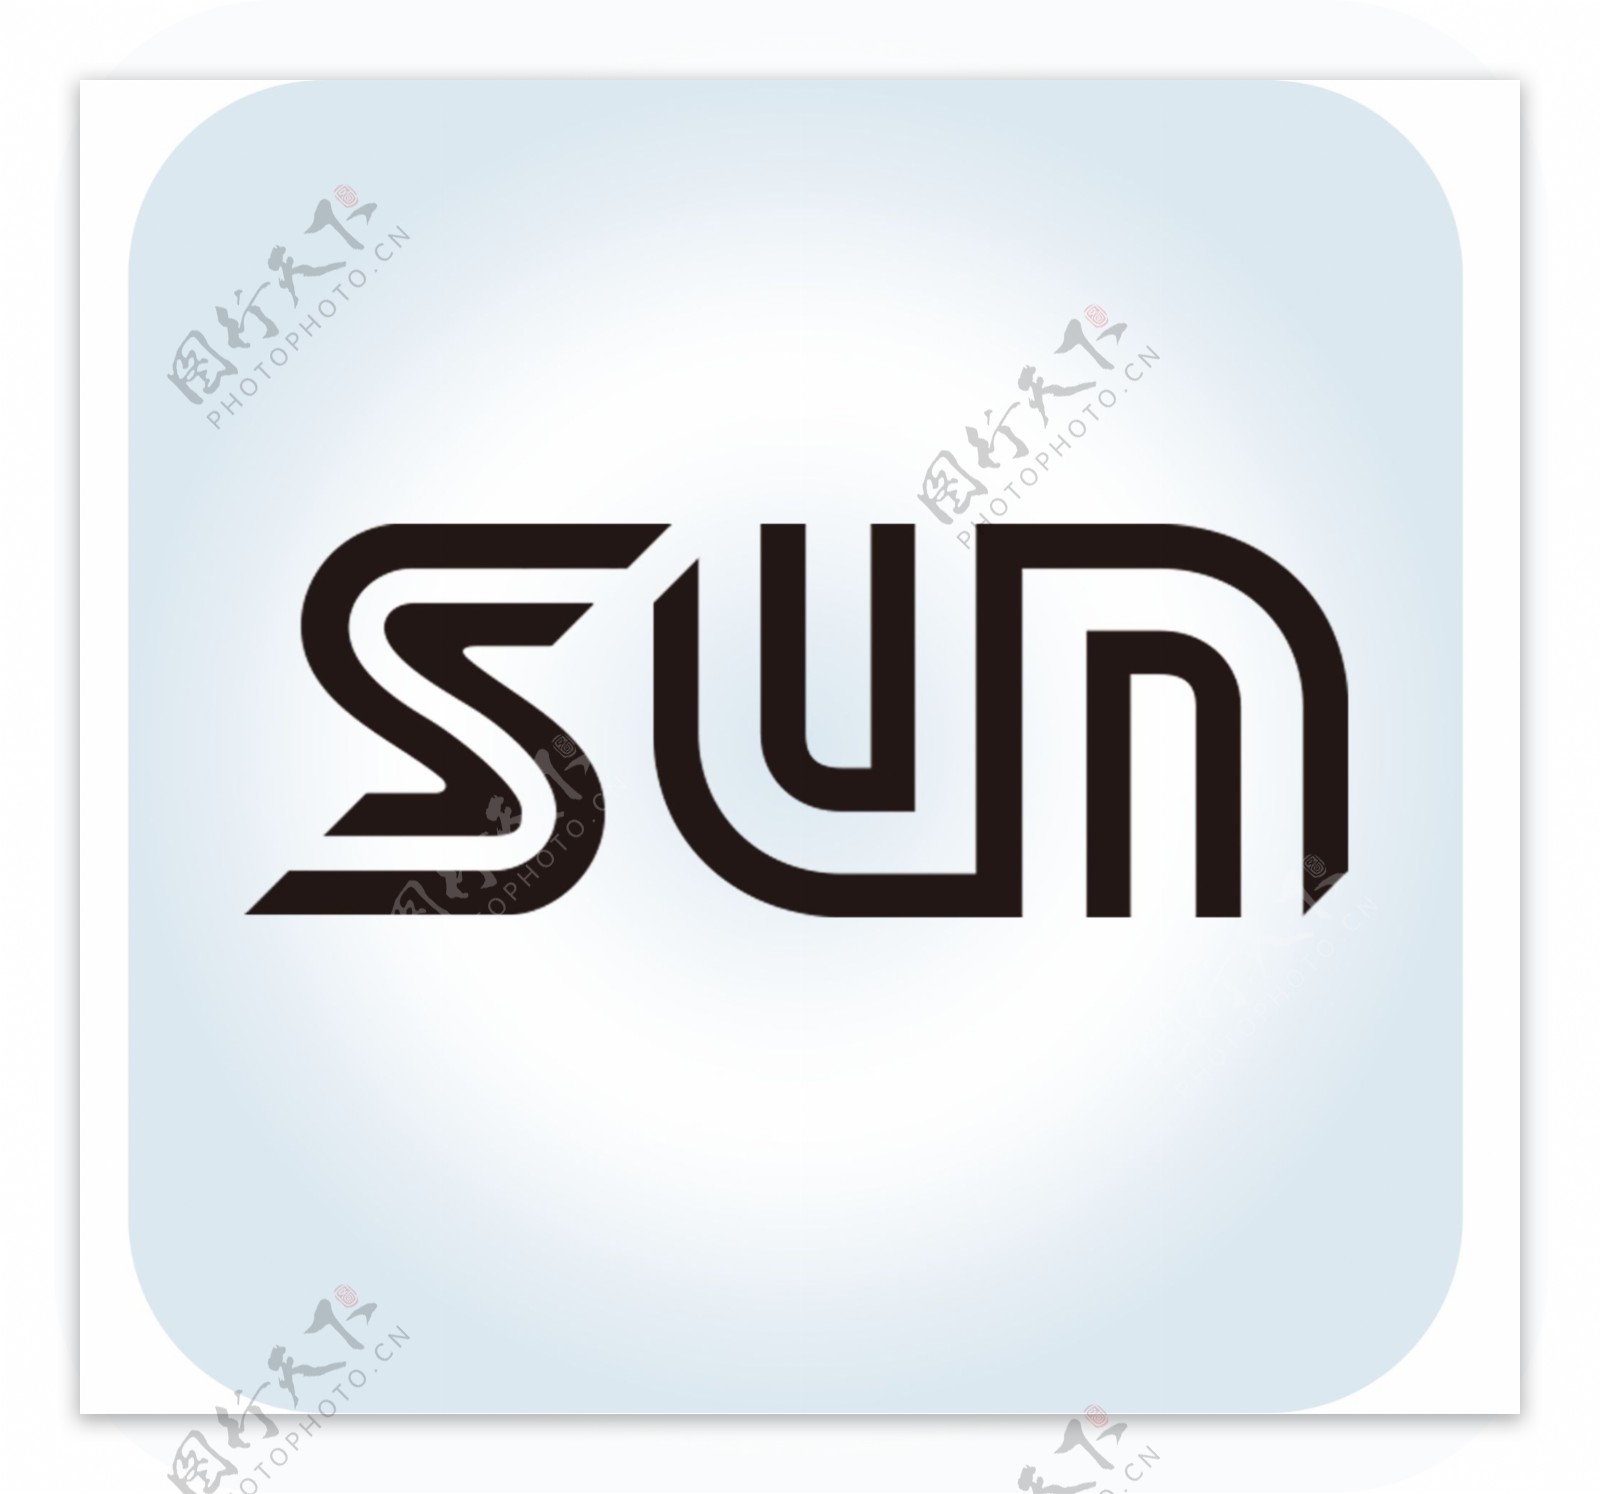 SUN标志